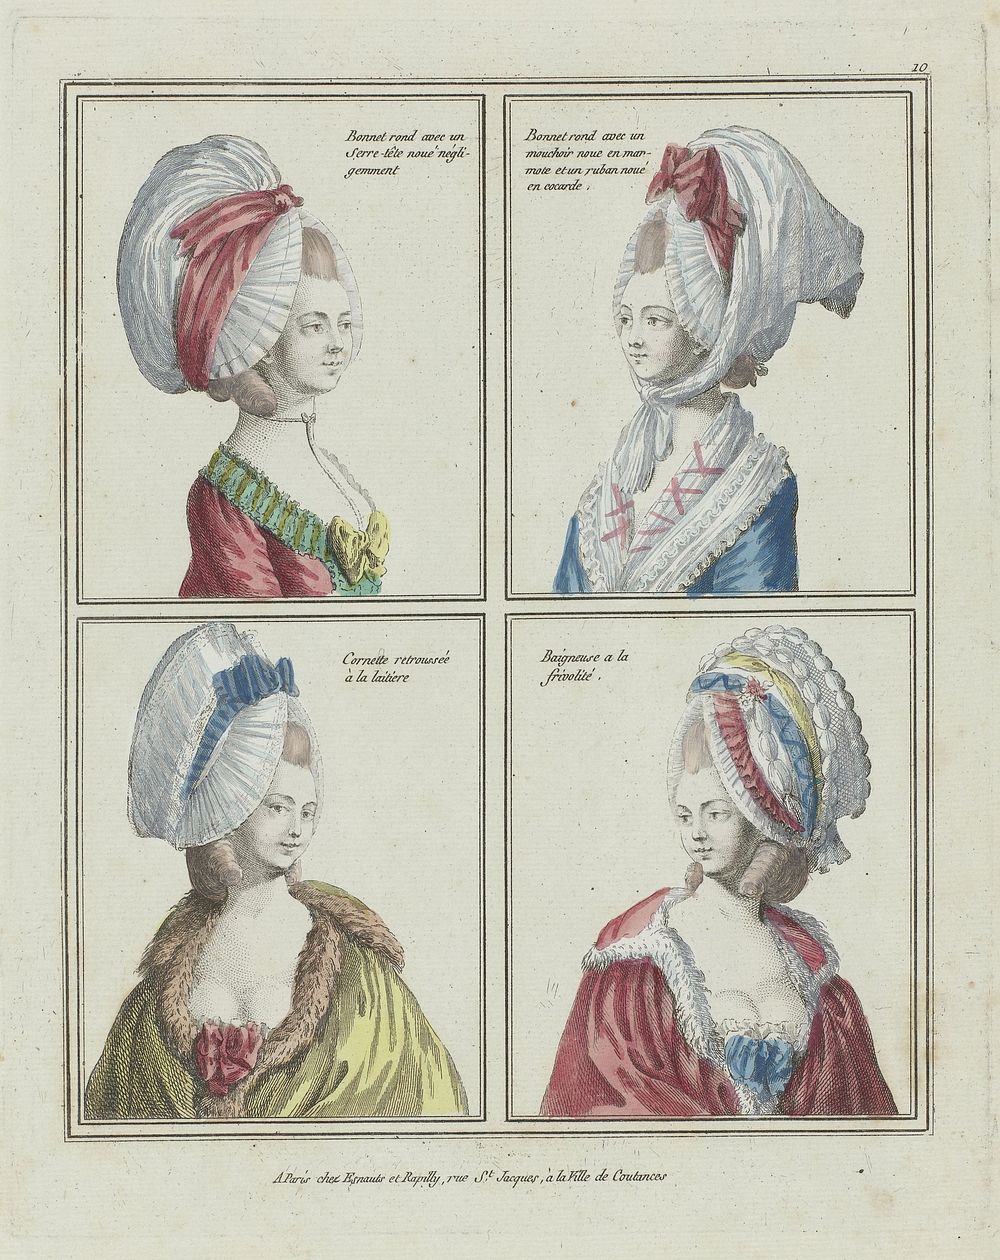 Gallerie des Modes et Costumes Français, 1776-1778, B 10 : Bonnet rond avec un Serre-têt (...) (c. 1776) by anonymous and…